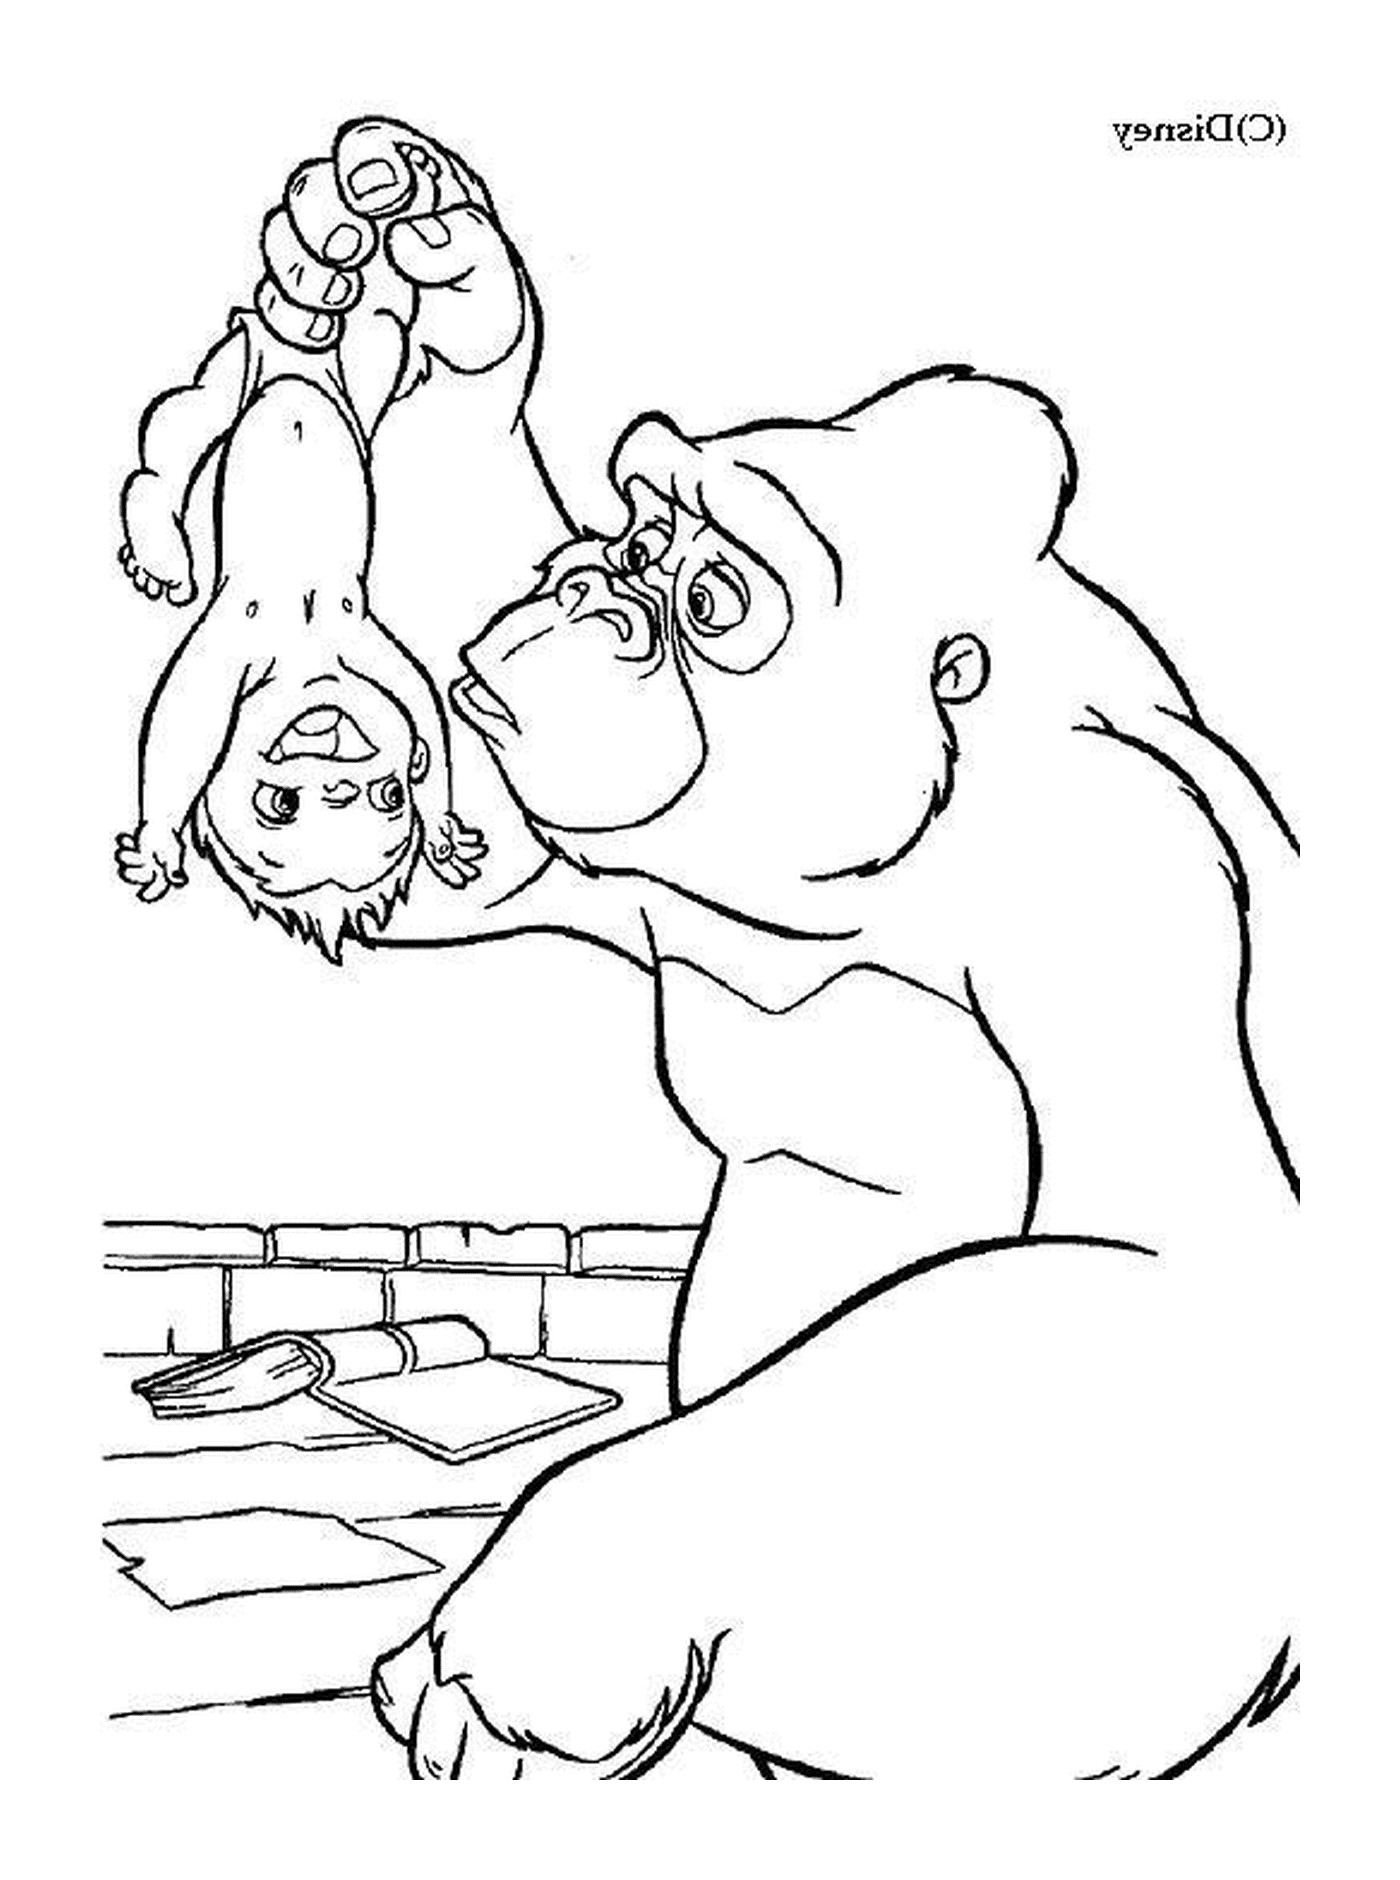  Gorila y chico jugando juntos 